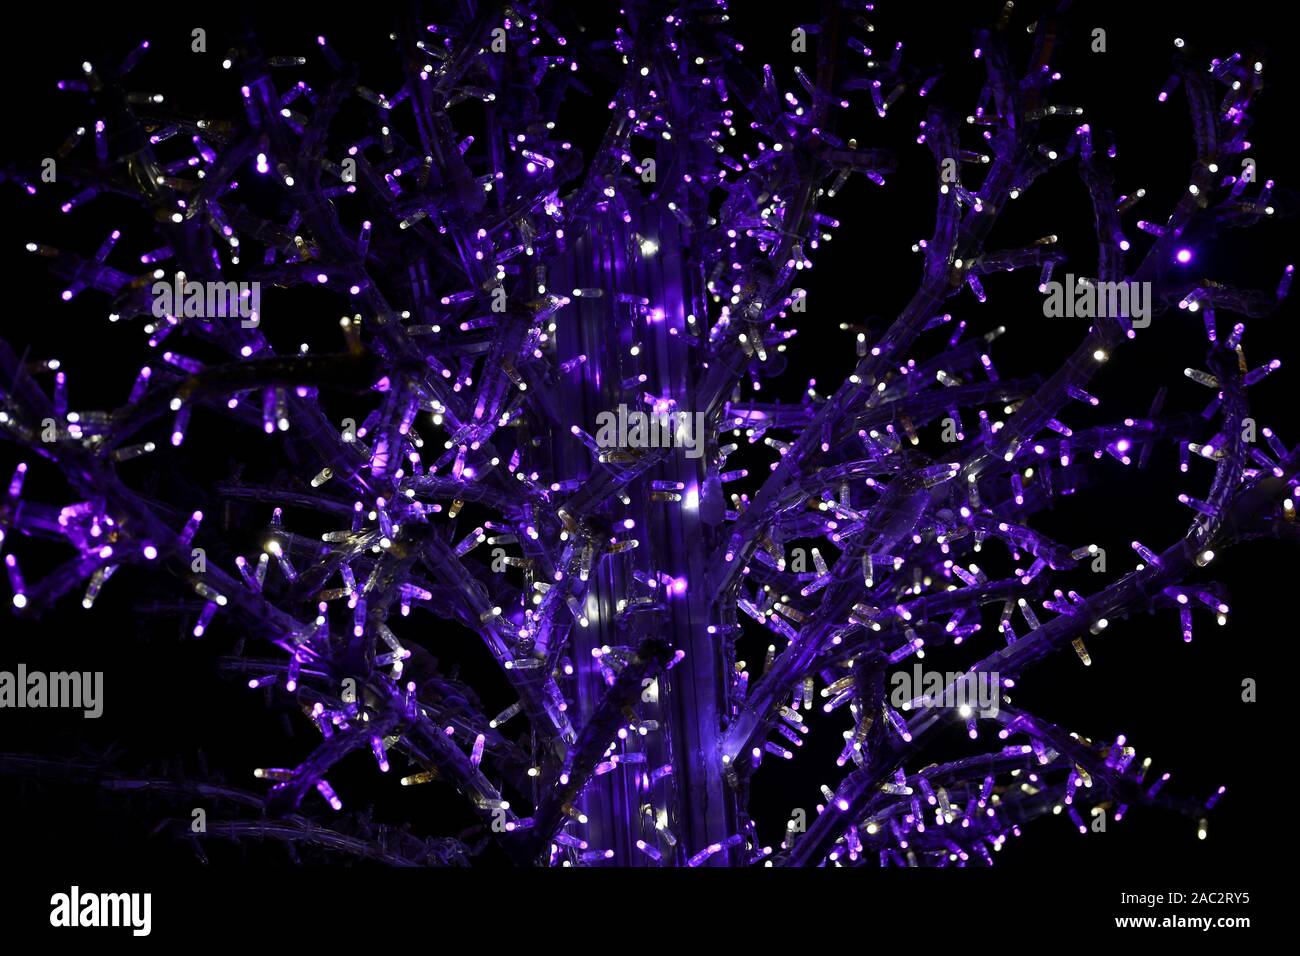 Teil von Urlaub Weihnachtsbaum dekorieren mit violett und weiß blinkenden Lichtern in der Nacht. Detail der neuen Jahr Dekorationen, string Reis Glühlampen. Stockfoto